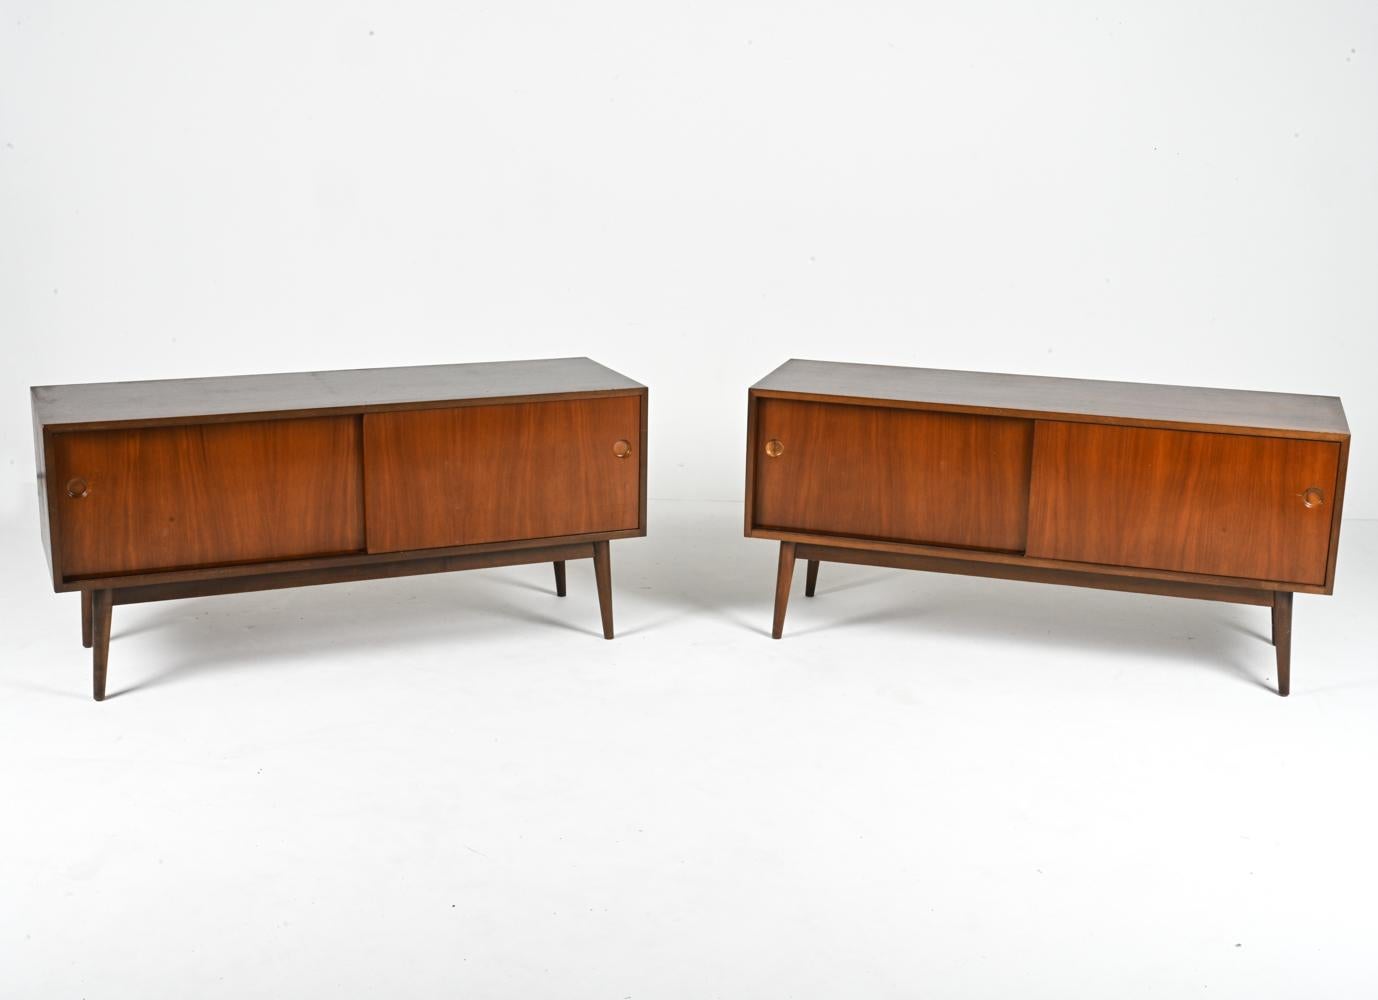 Plongez dans l'allure intemporelle du design du milieu du siècle avec cette paire exceptionnelle de meubles d'appoint. Méticuleusement fabriquées en Allemagne à partir de noyer luxueux, ces pièces allient harmonieusement la forme et la fonction pour